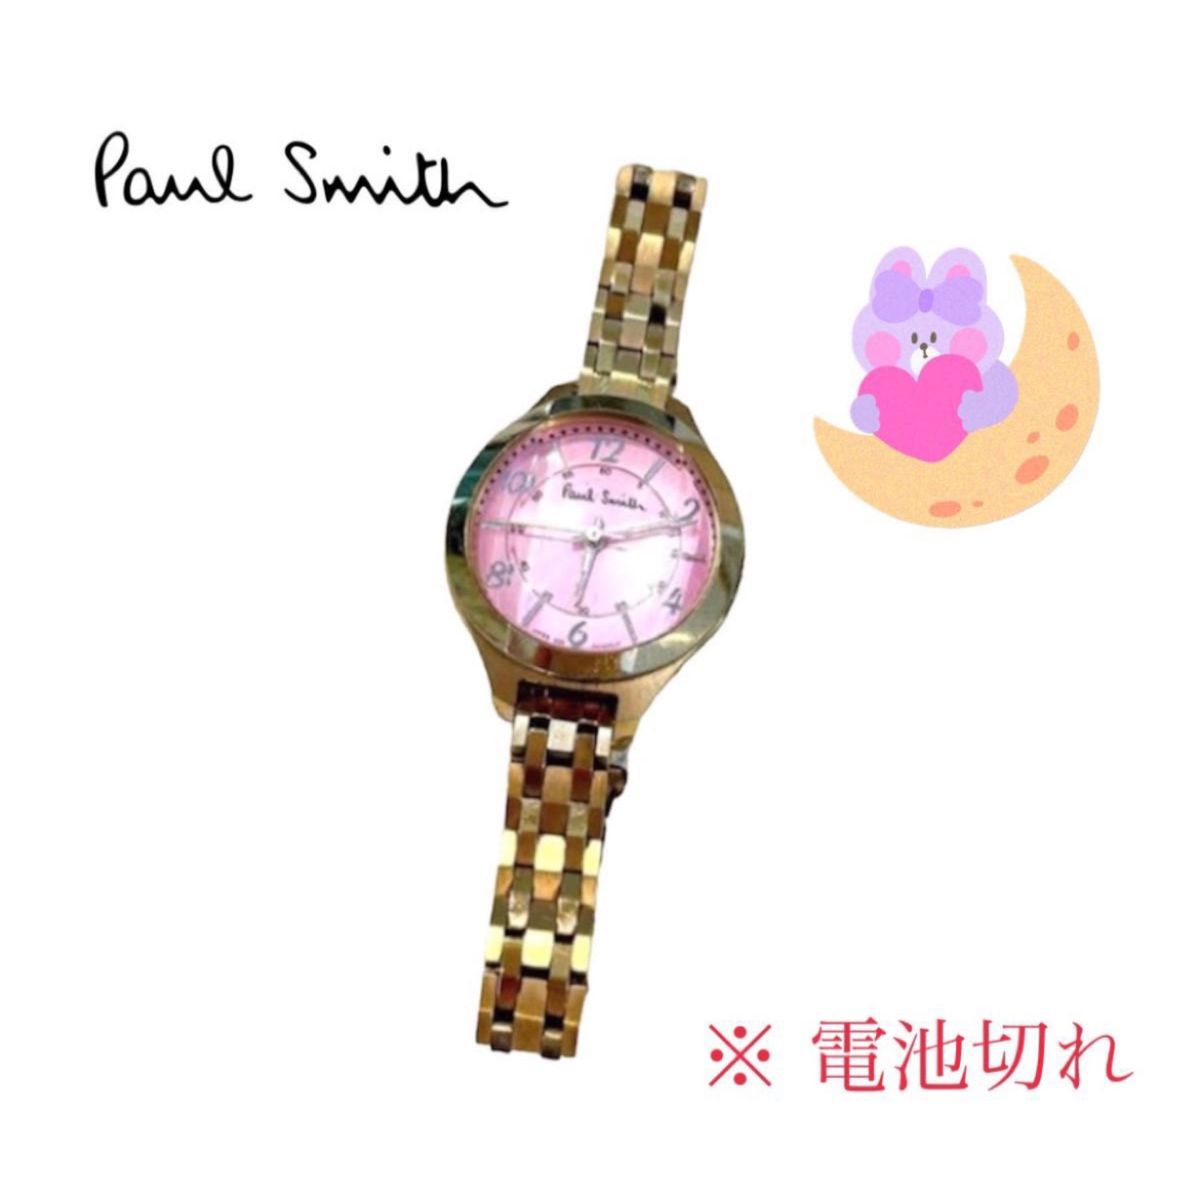 Paul Smith ゴールド ピンク うさぎ ウォッチ 腕時計